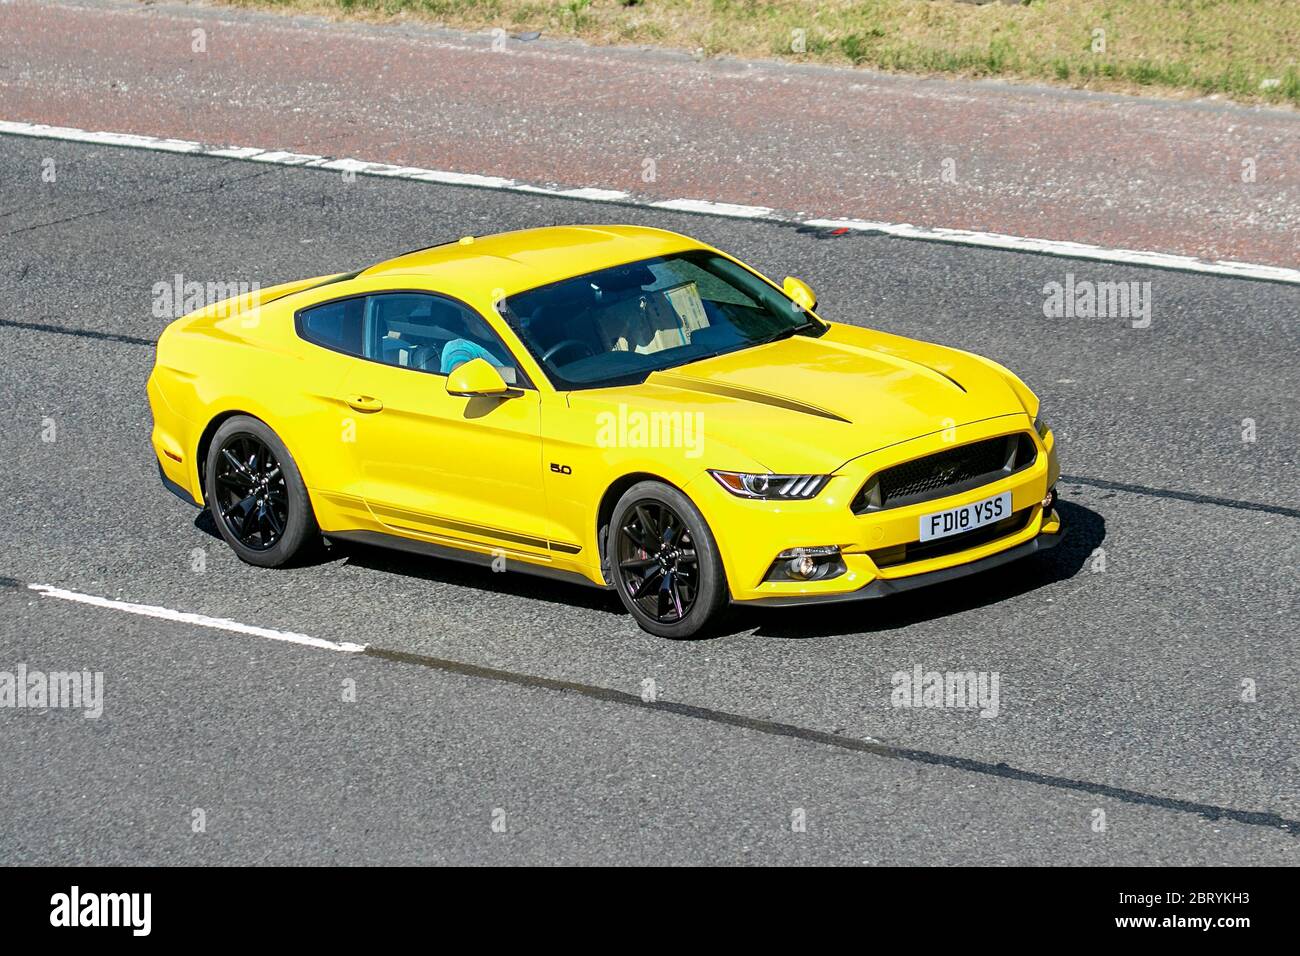 2018 Gelb Ford Mustang Shadow Edition; Fahrzeug Verkehr bewegende  Fahrzeuge, Autos fahren Fahrzeug auf UK Straßen, Motoren, Autofahren auf  der Autobahn M6 Autobahn Stockfotografie - Alamy